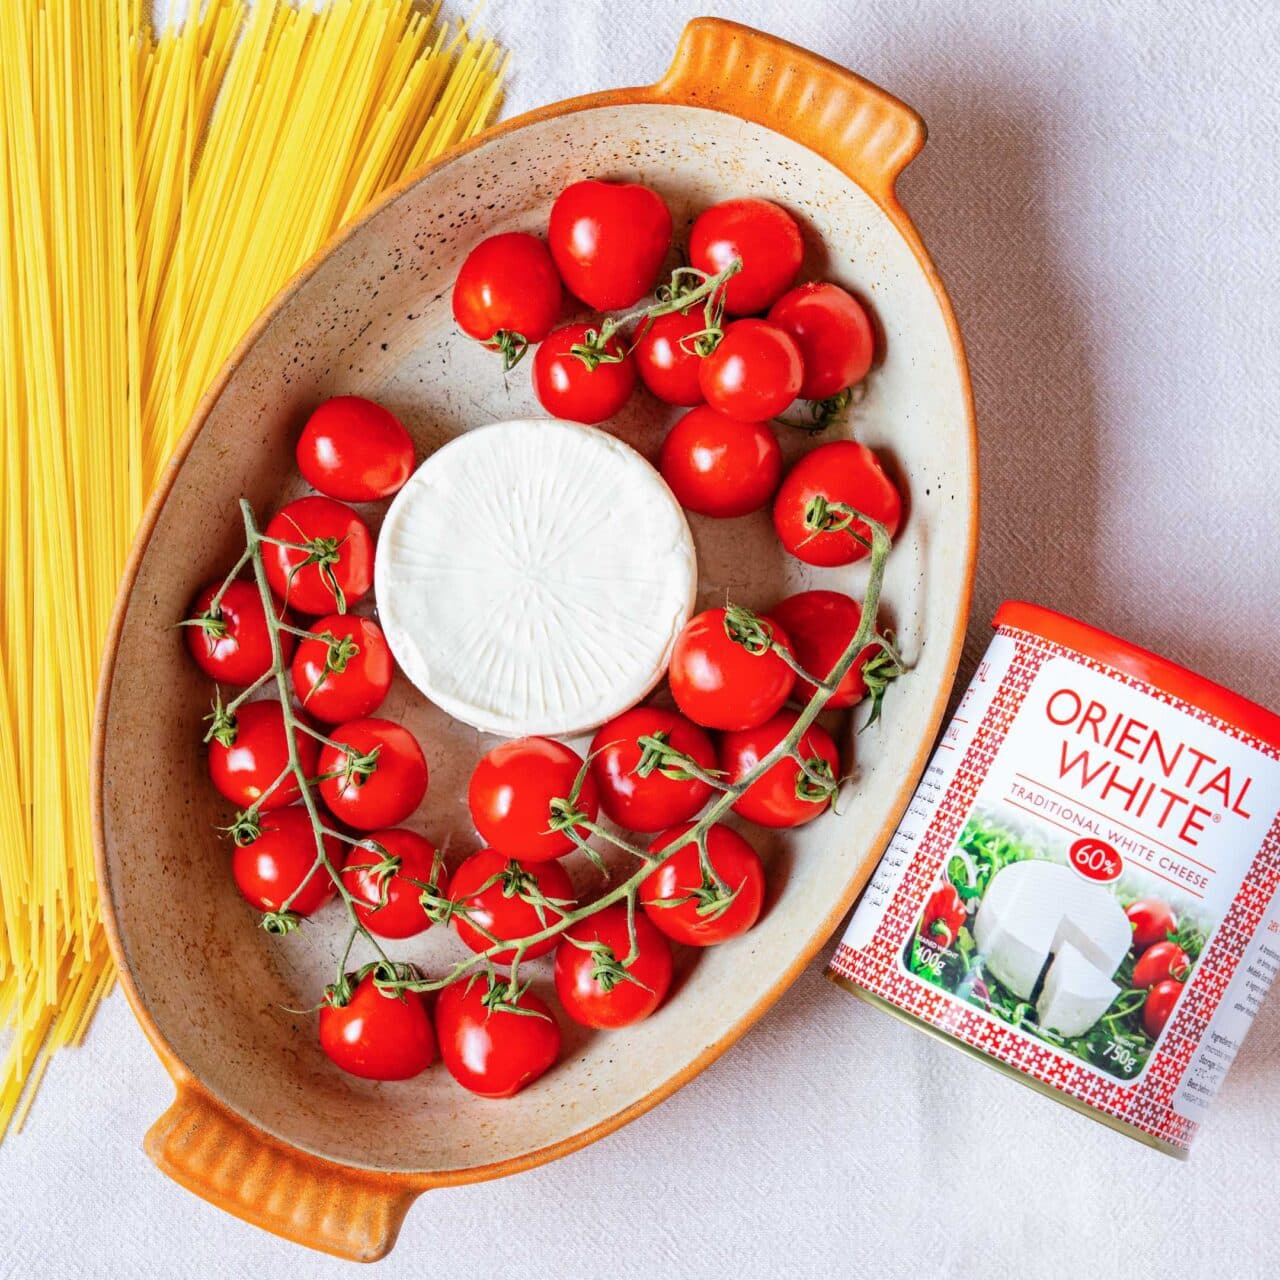 Krämig pasta med vitost och tomater